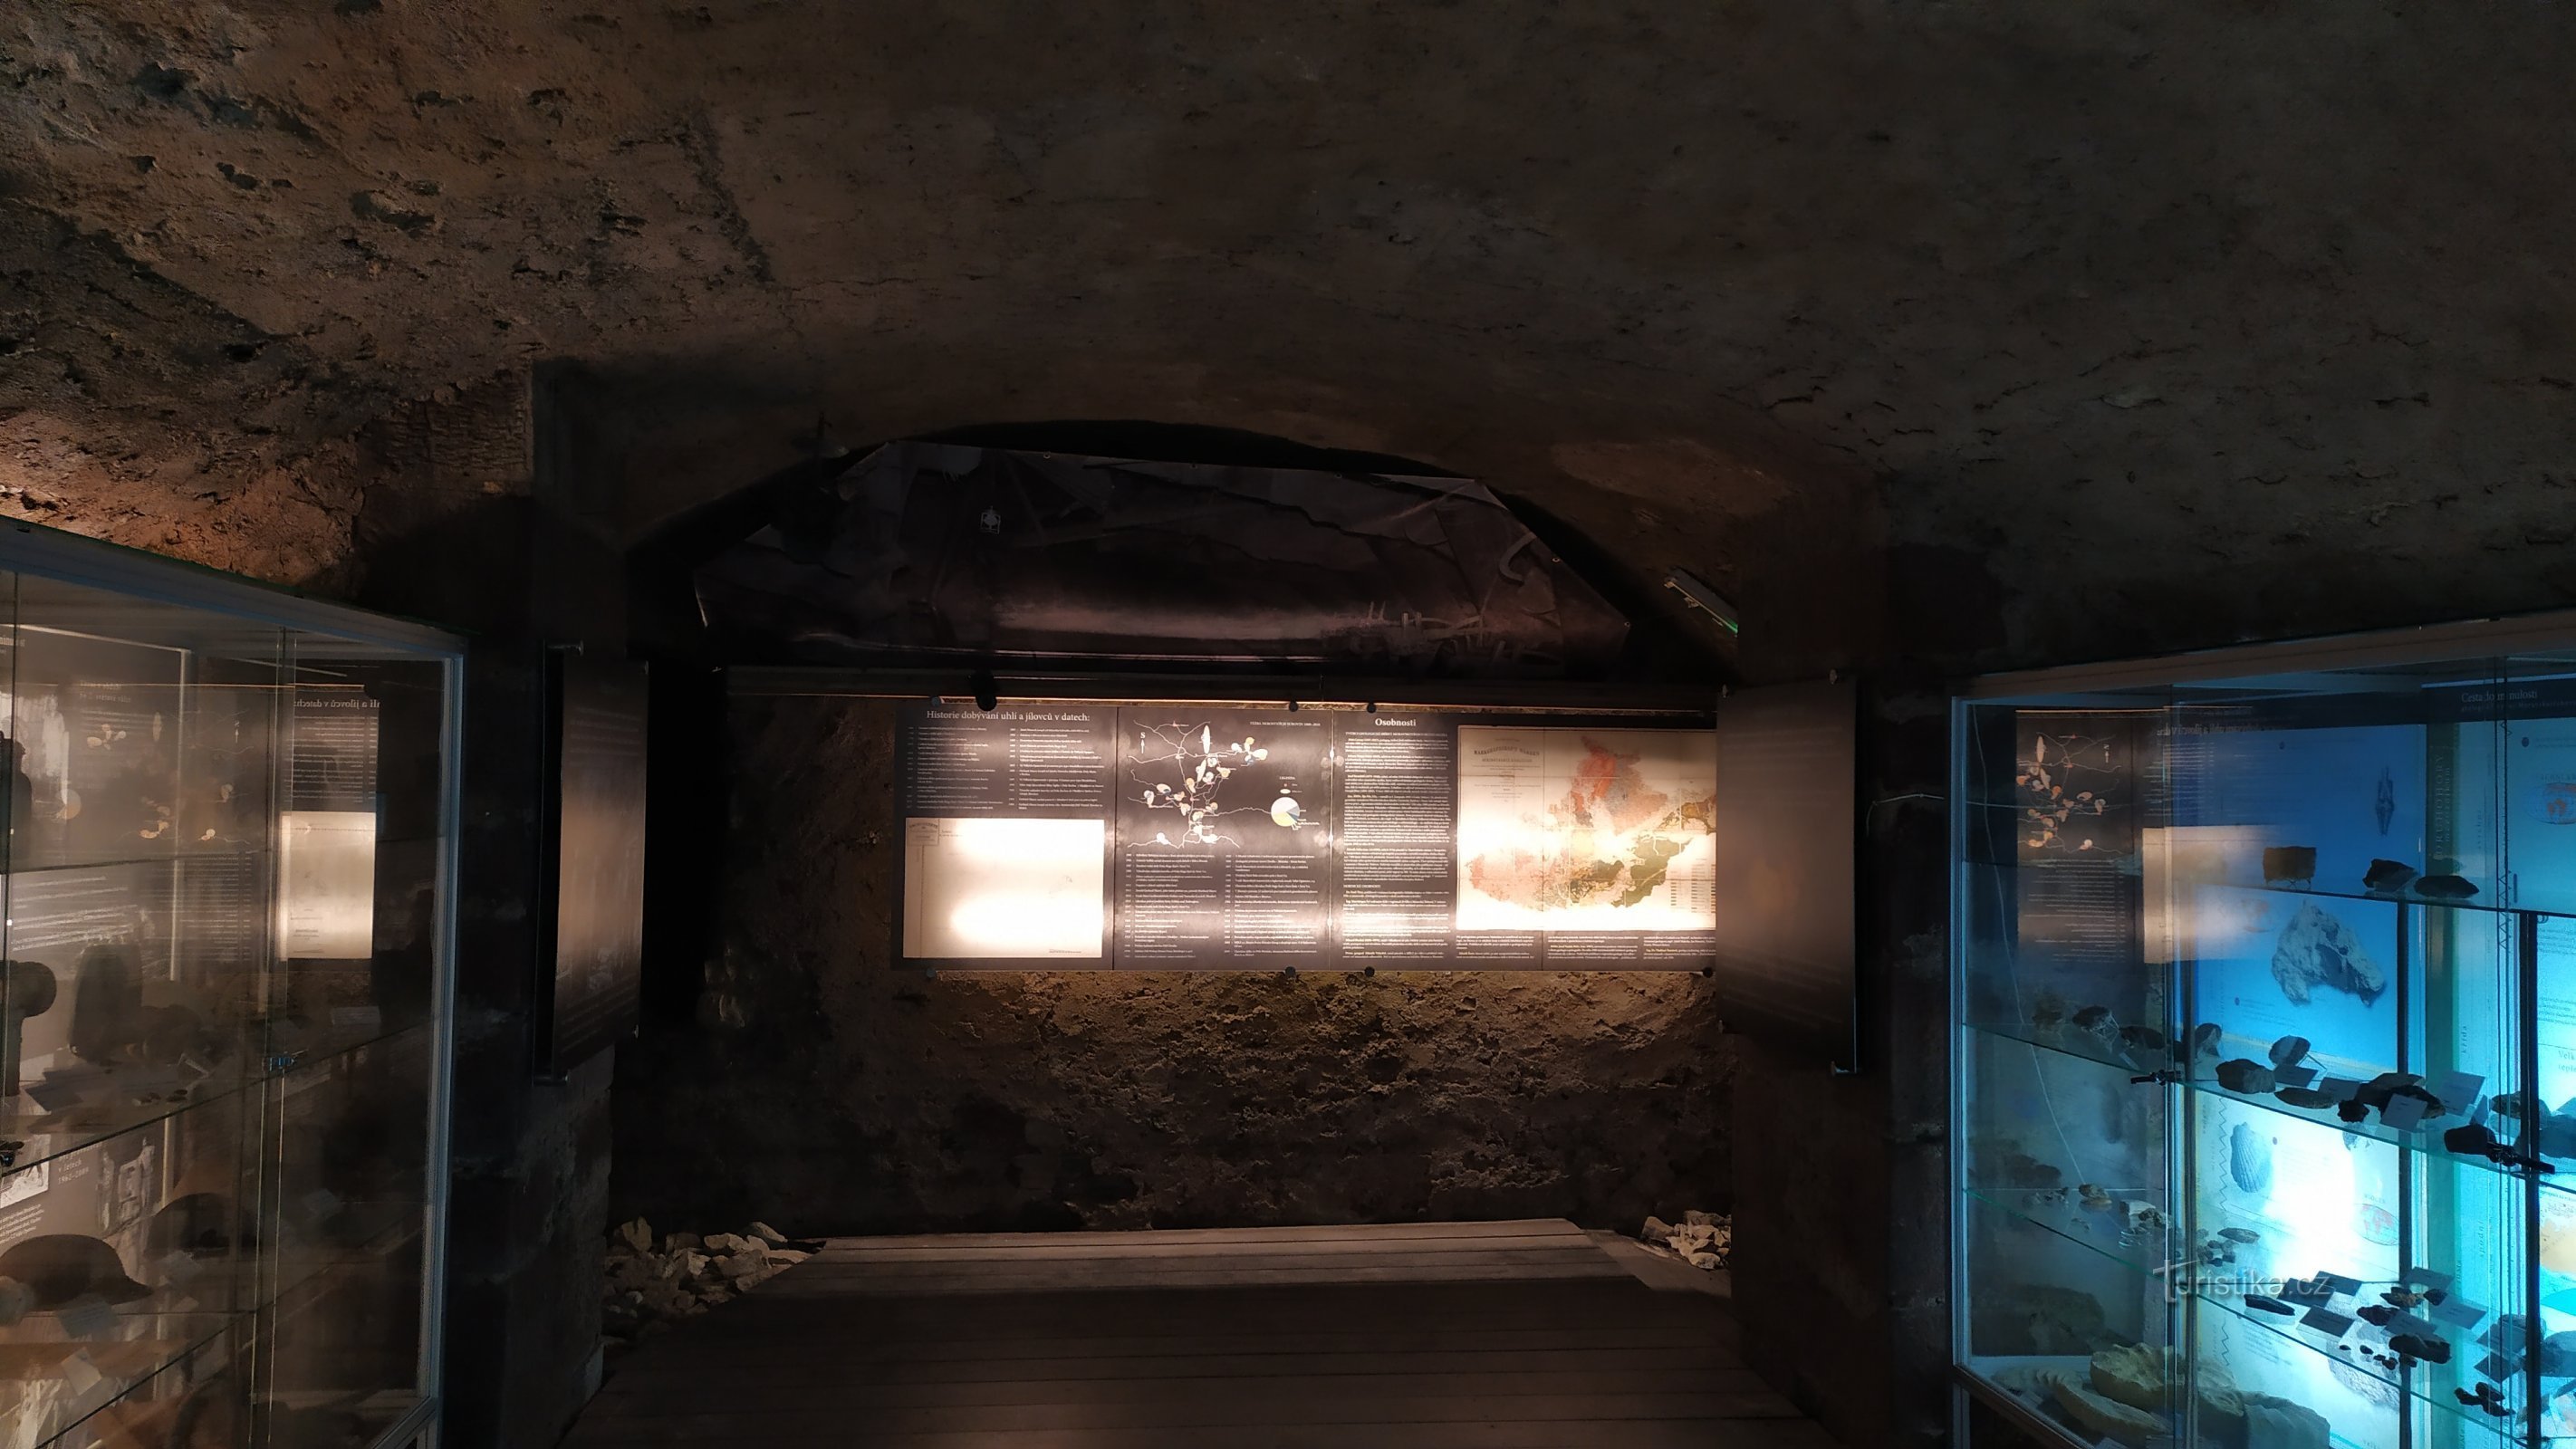 Η έκθεση βρίσκεται στα ερείπια του κελαριού του παλιού κάστρου